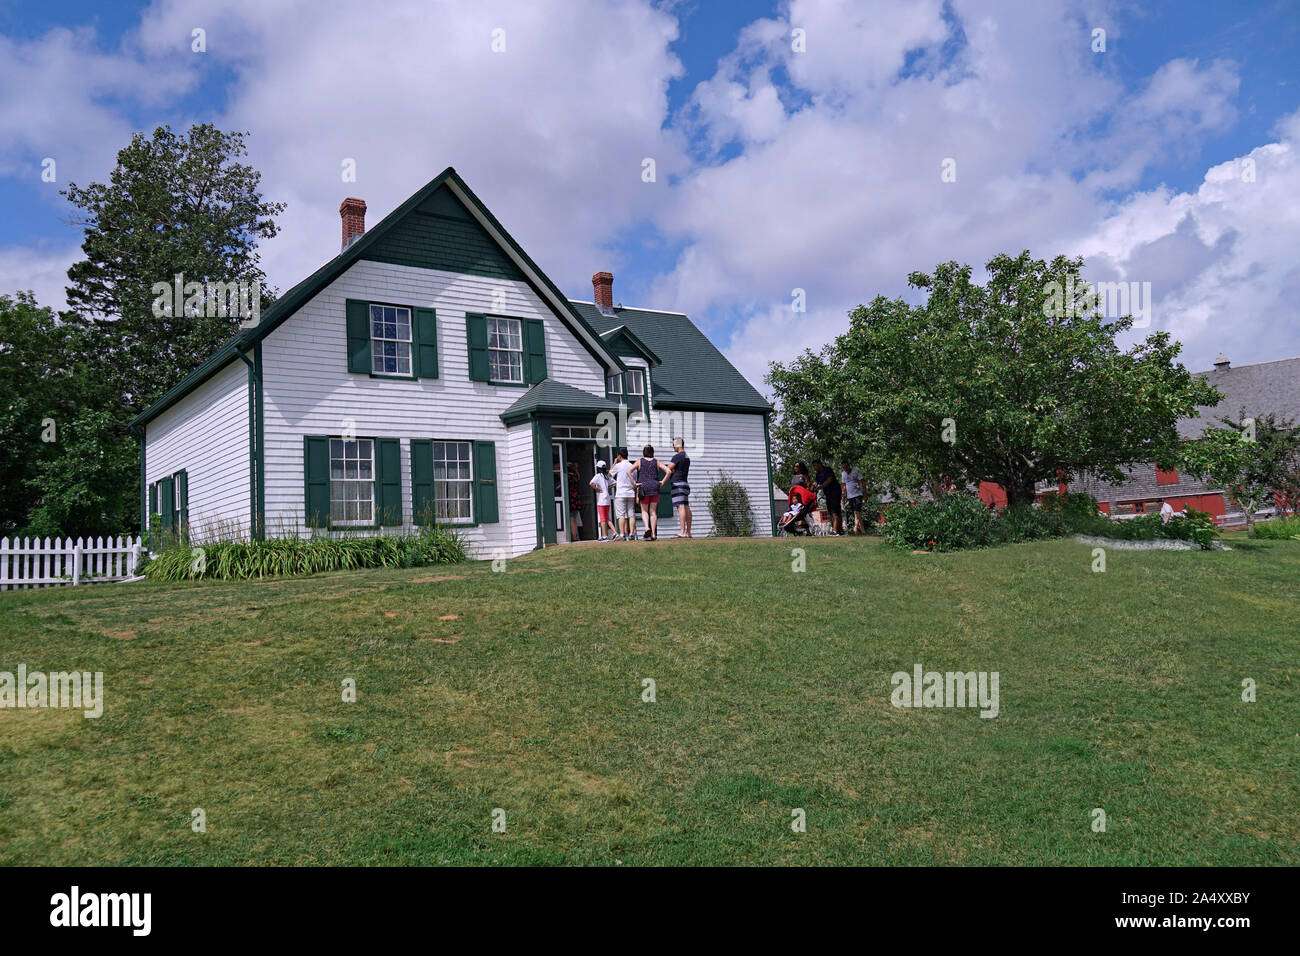 PRINCE EDWARD ISLAND, KANADA - AUGUST 2019: Das Haus, in dem die geliebte Charakter Anne von Green Gables sich befand, ist haltbar und offen zu besuchen Stockfoto